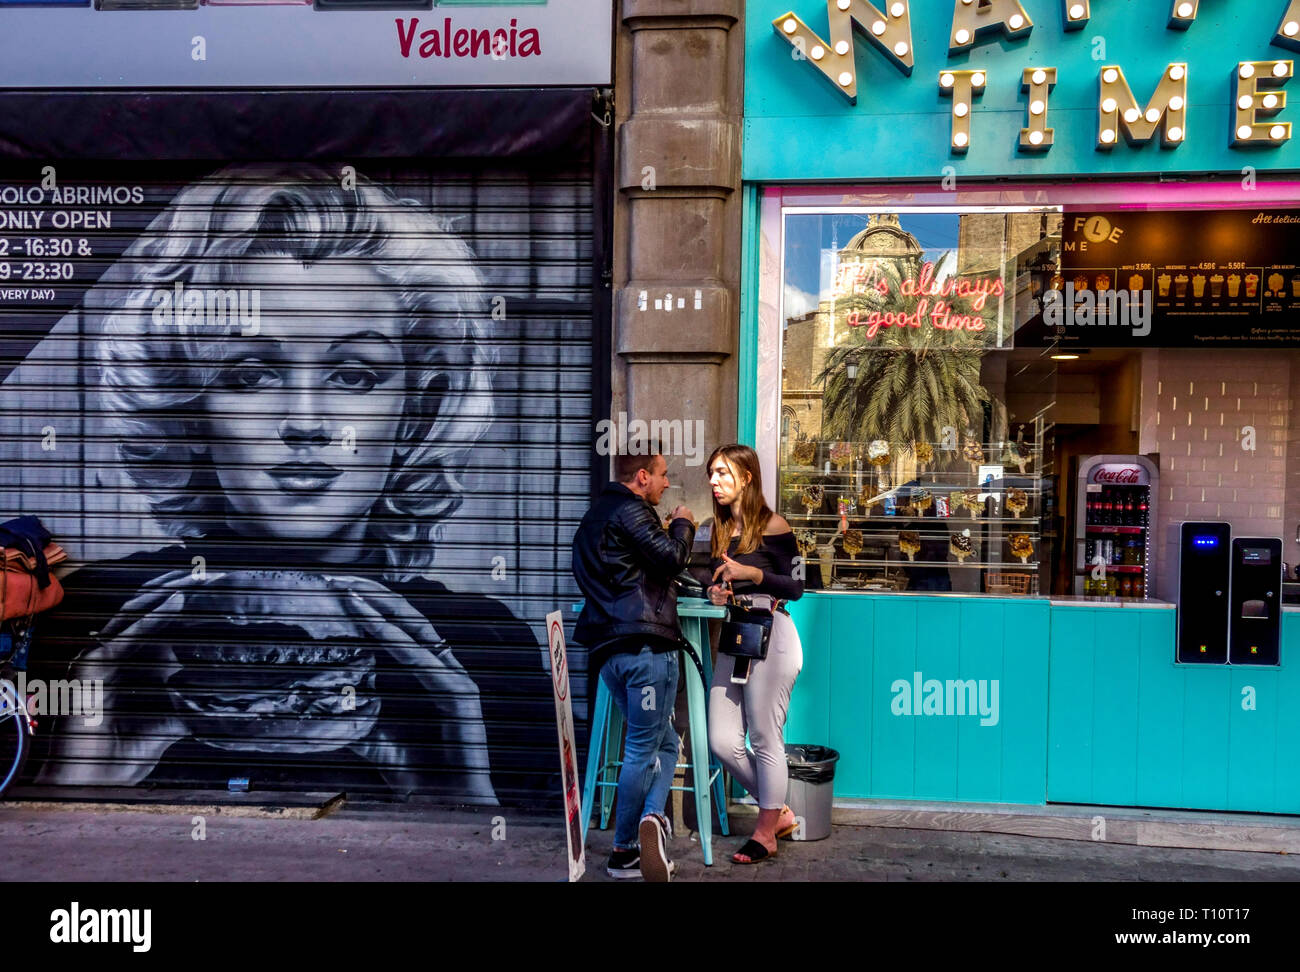 Valencia Street art Old Town avec Marilyn Monroe manger Burger Valencia rues graffiti Espagne scène de vie jeune couple ville Banque D'Images